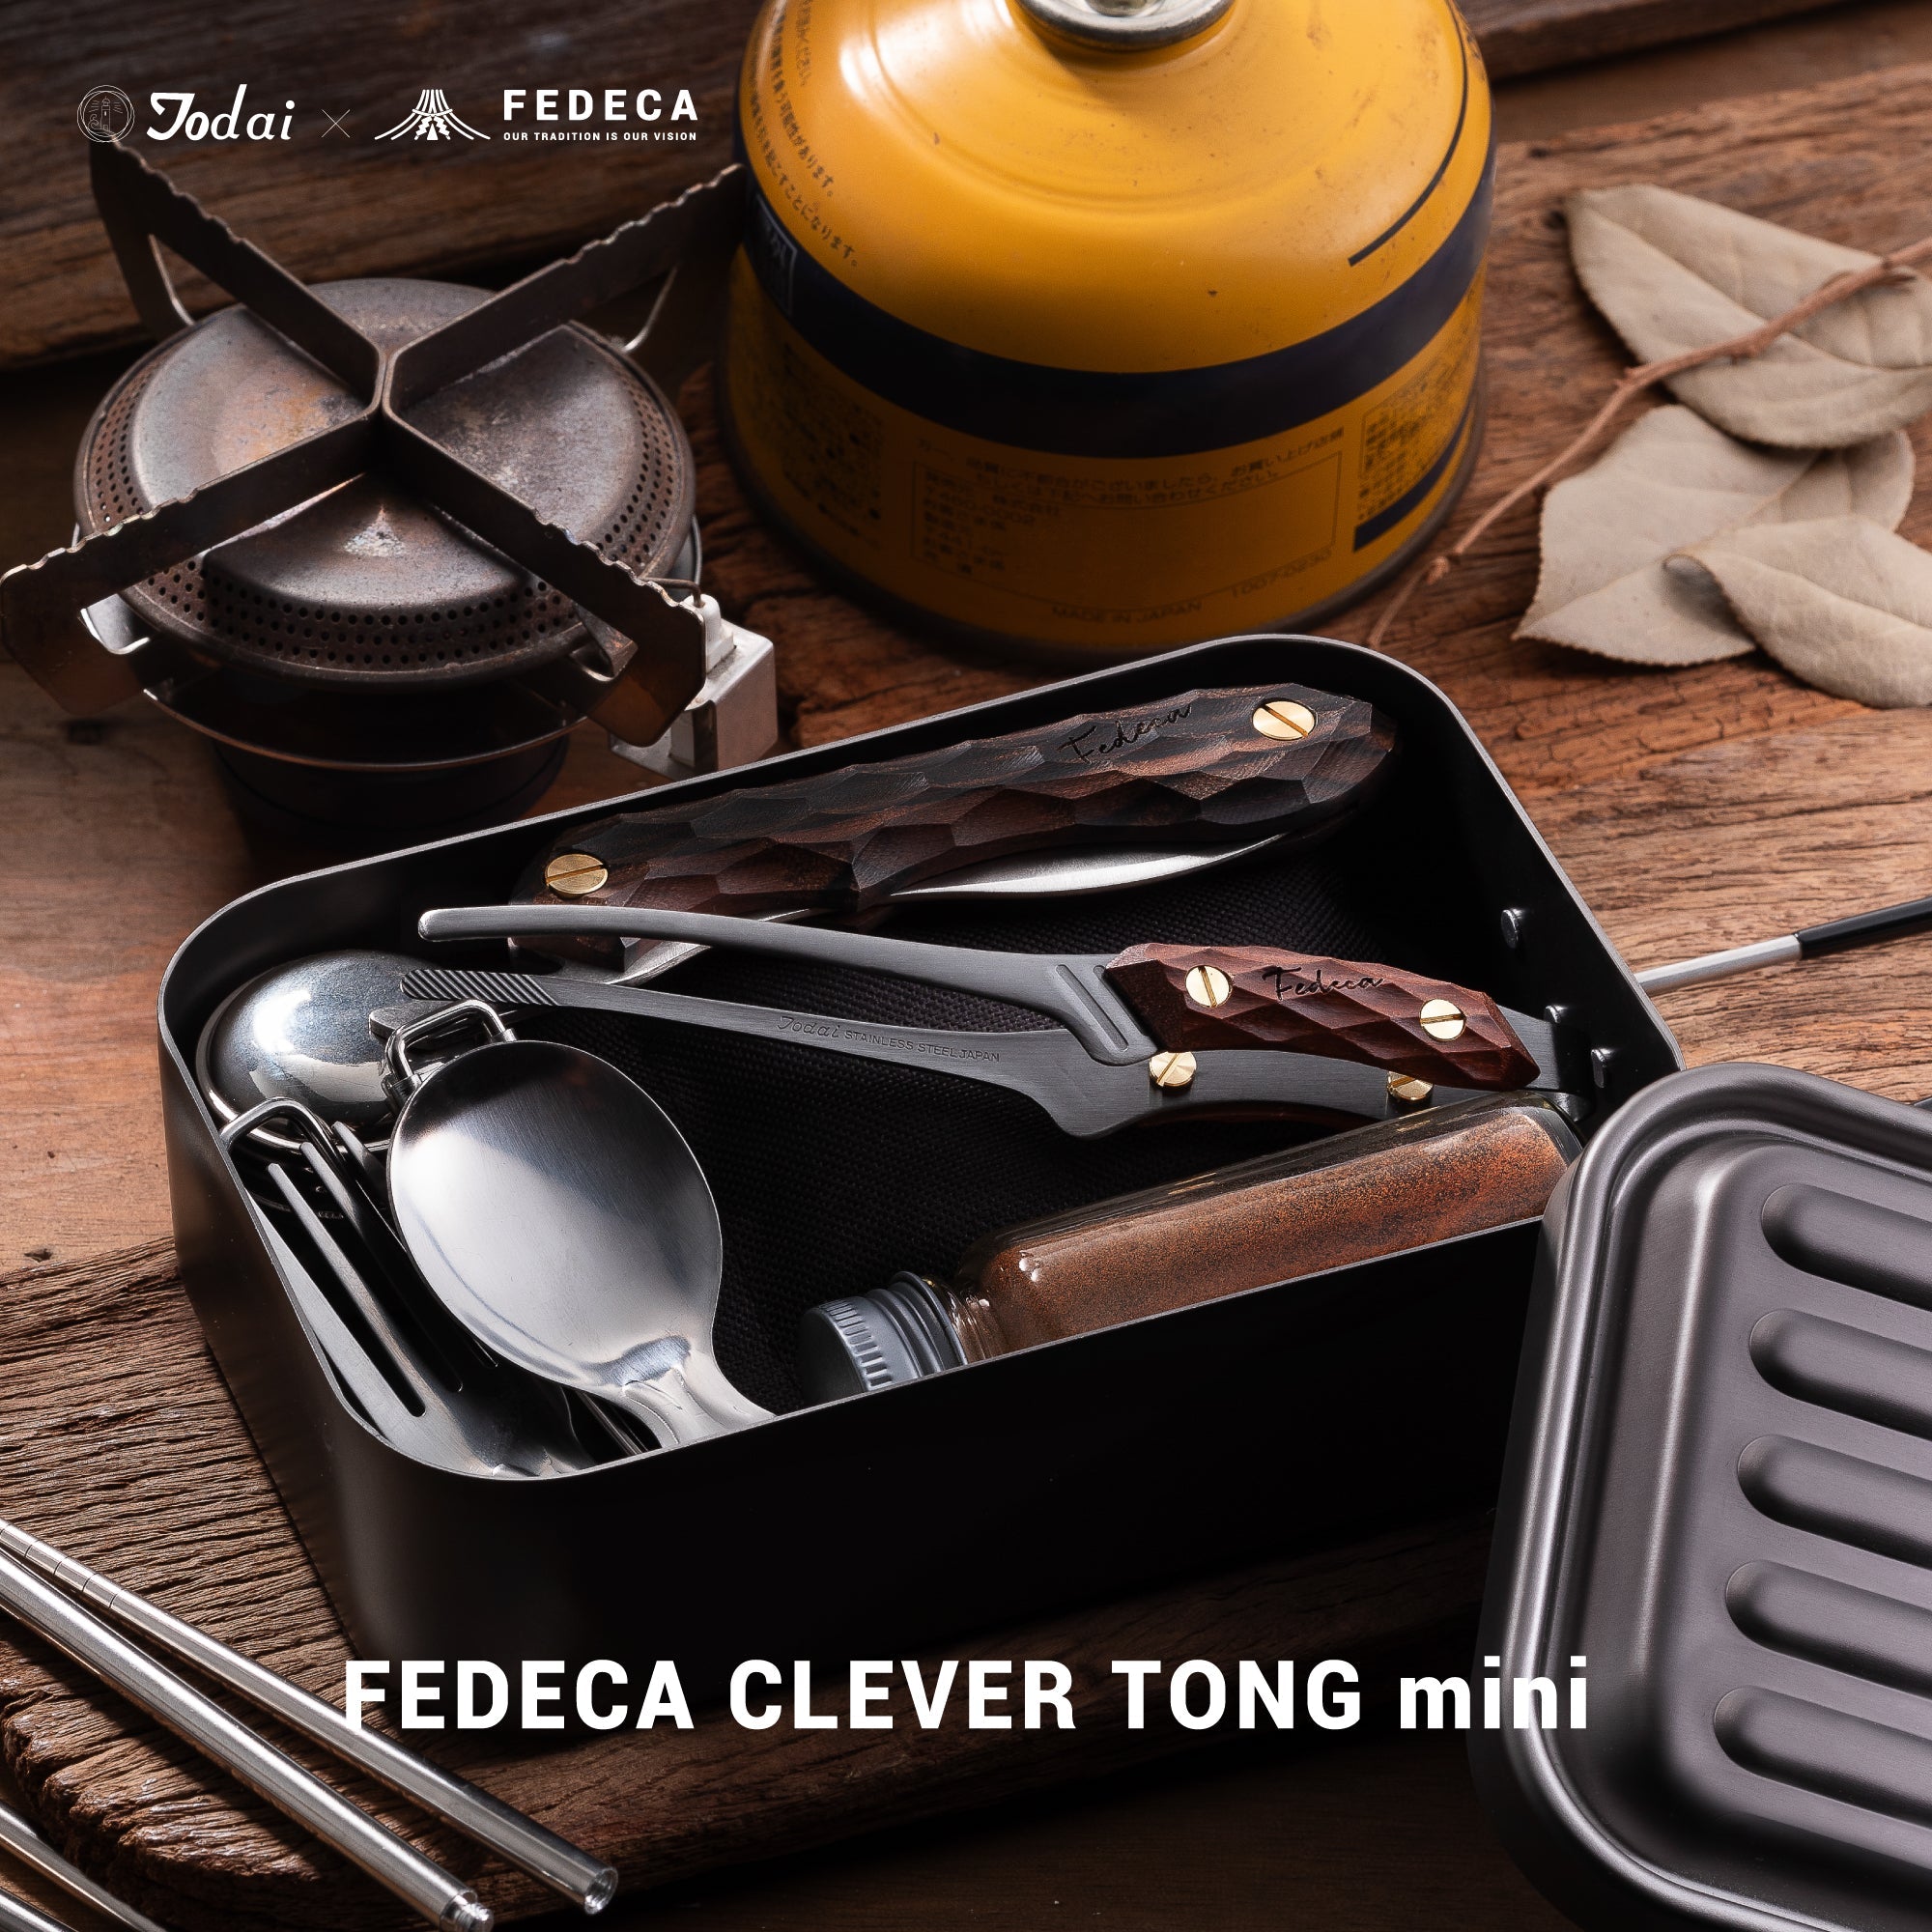 【予約】FEDECA CLEVER TONG mini プレーンブラック 4,620円 【5月下旬以降順次発送 】